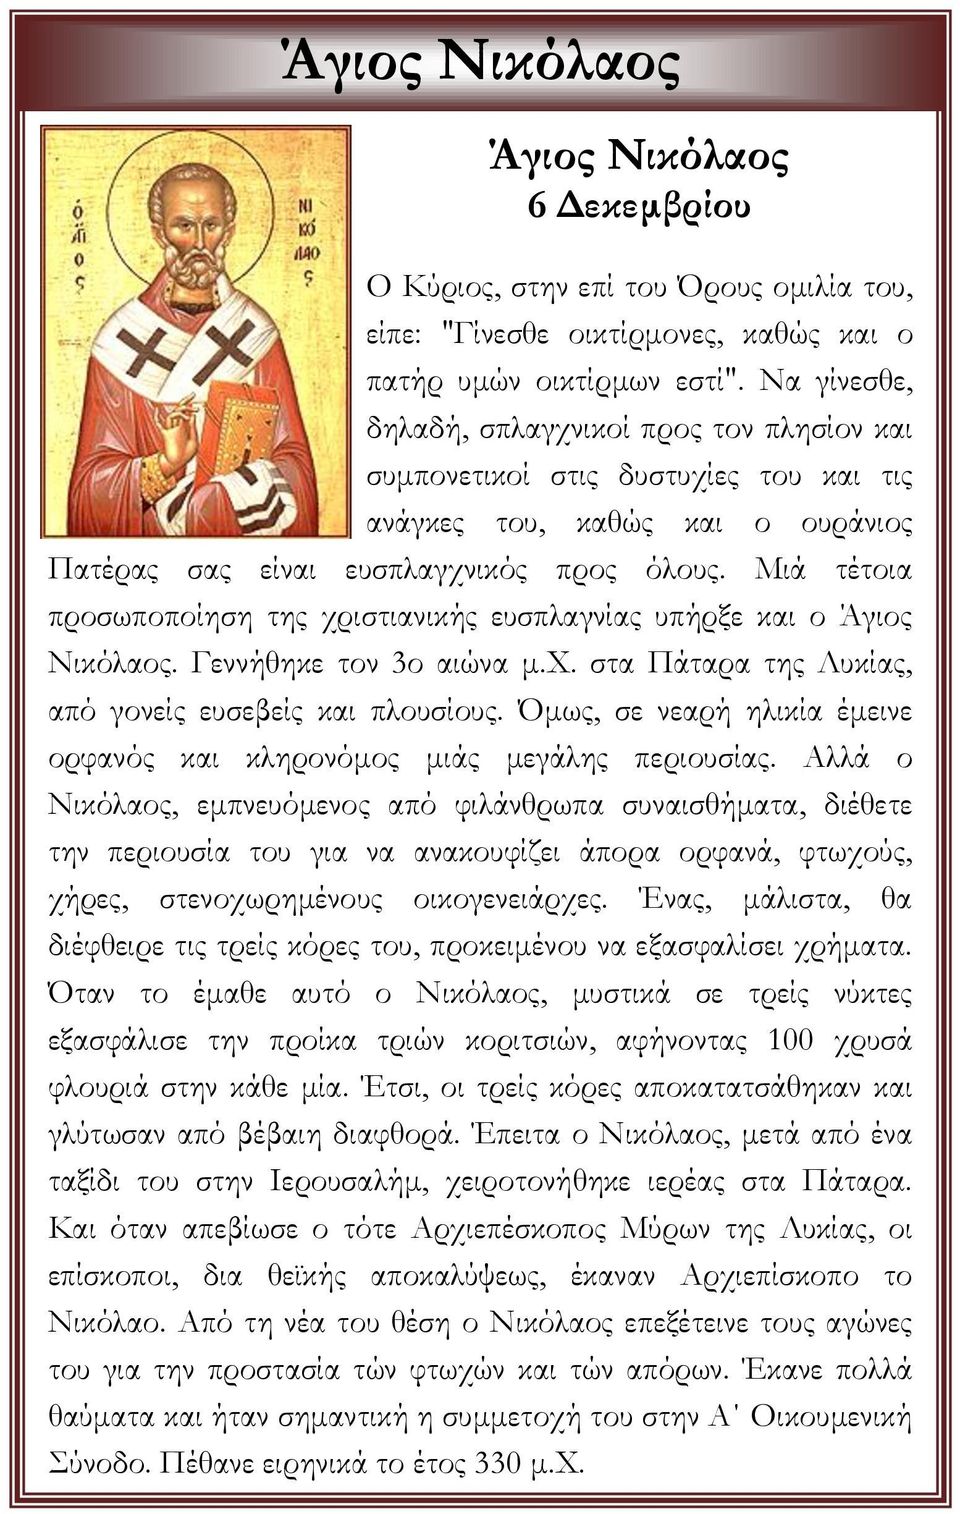 Μιά τέτοια προσωποποίηση της χριστιανικής ευσπλαγνίας υπήρξε και ο Άγιος Νικόλαος. Γεννήθηκε τον 3ο αιώνα μ.χ. στα Πάταρα της Λυκίας, από γονείς ευσεβείς και πλουσίους.